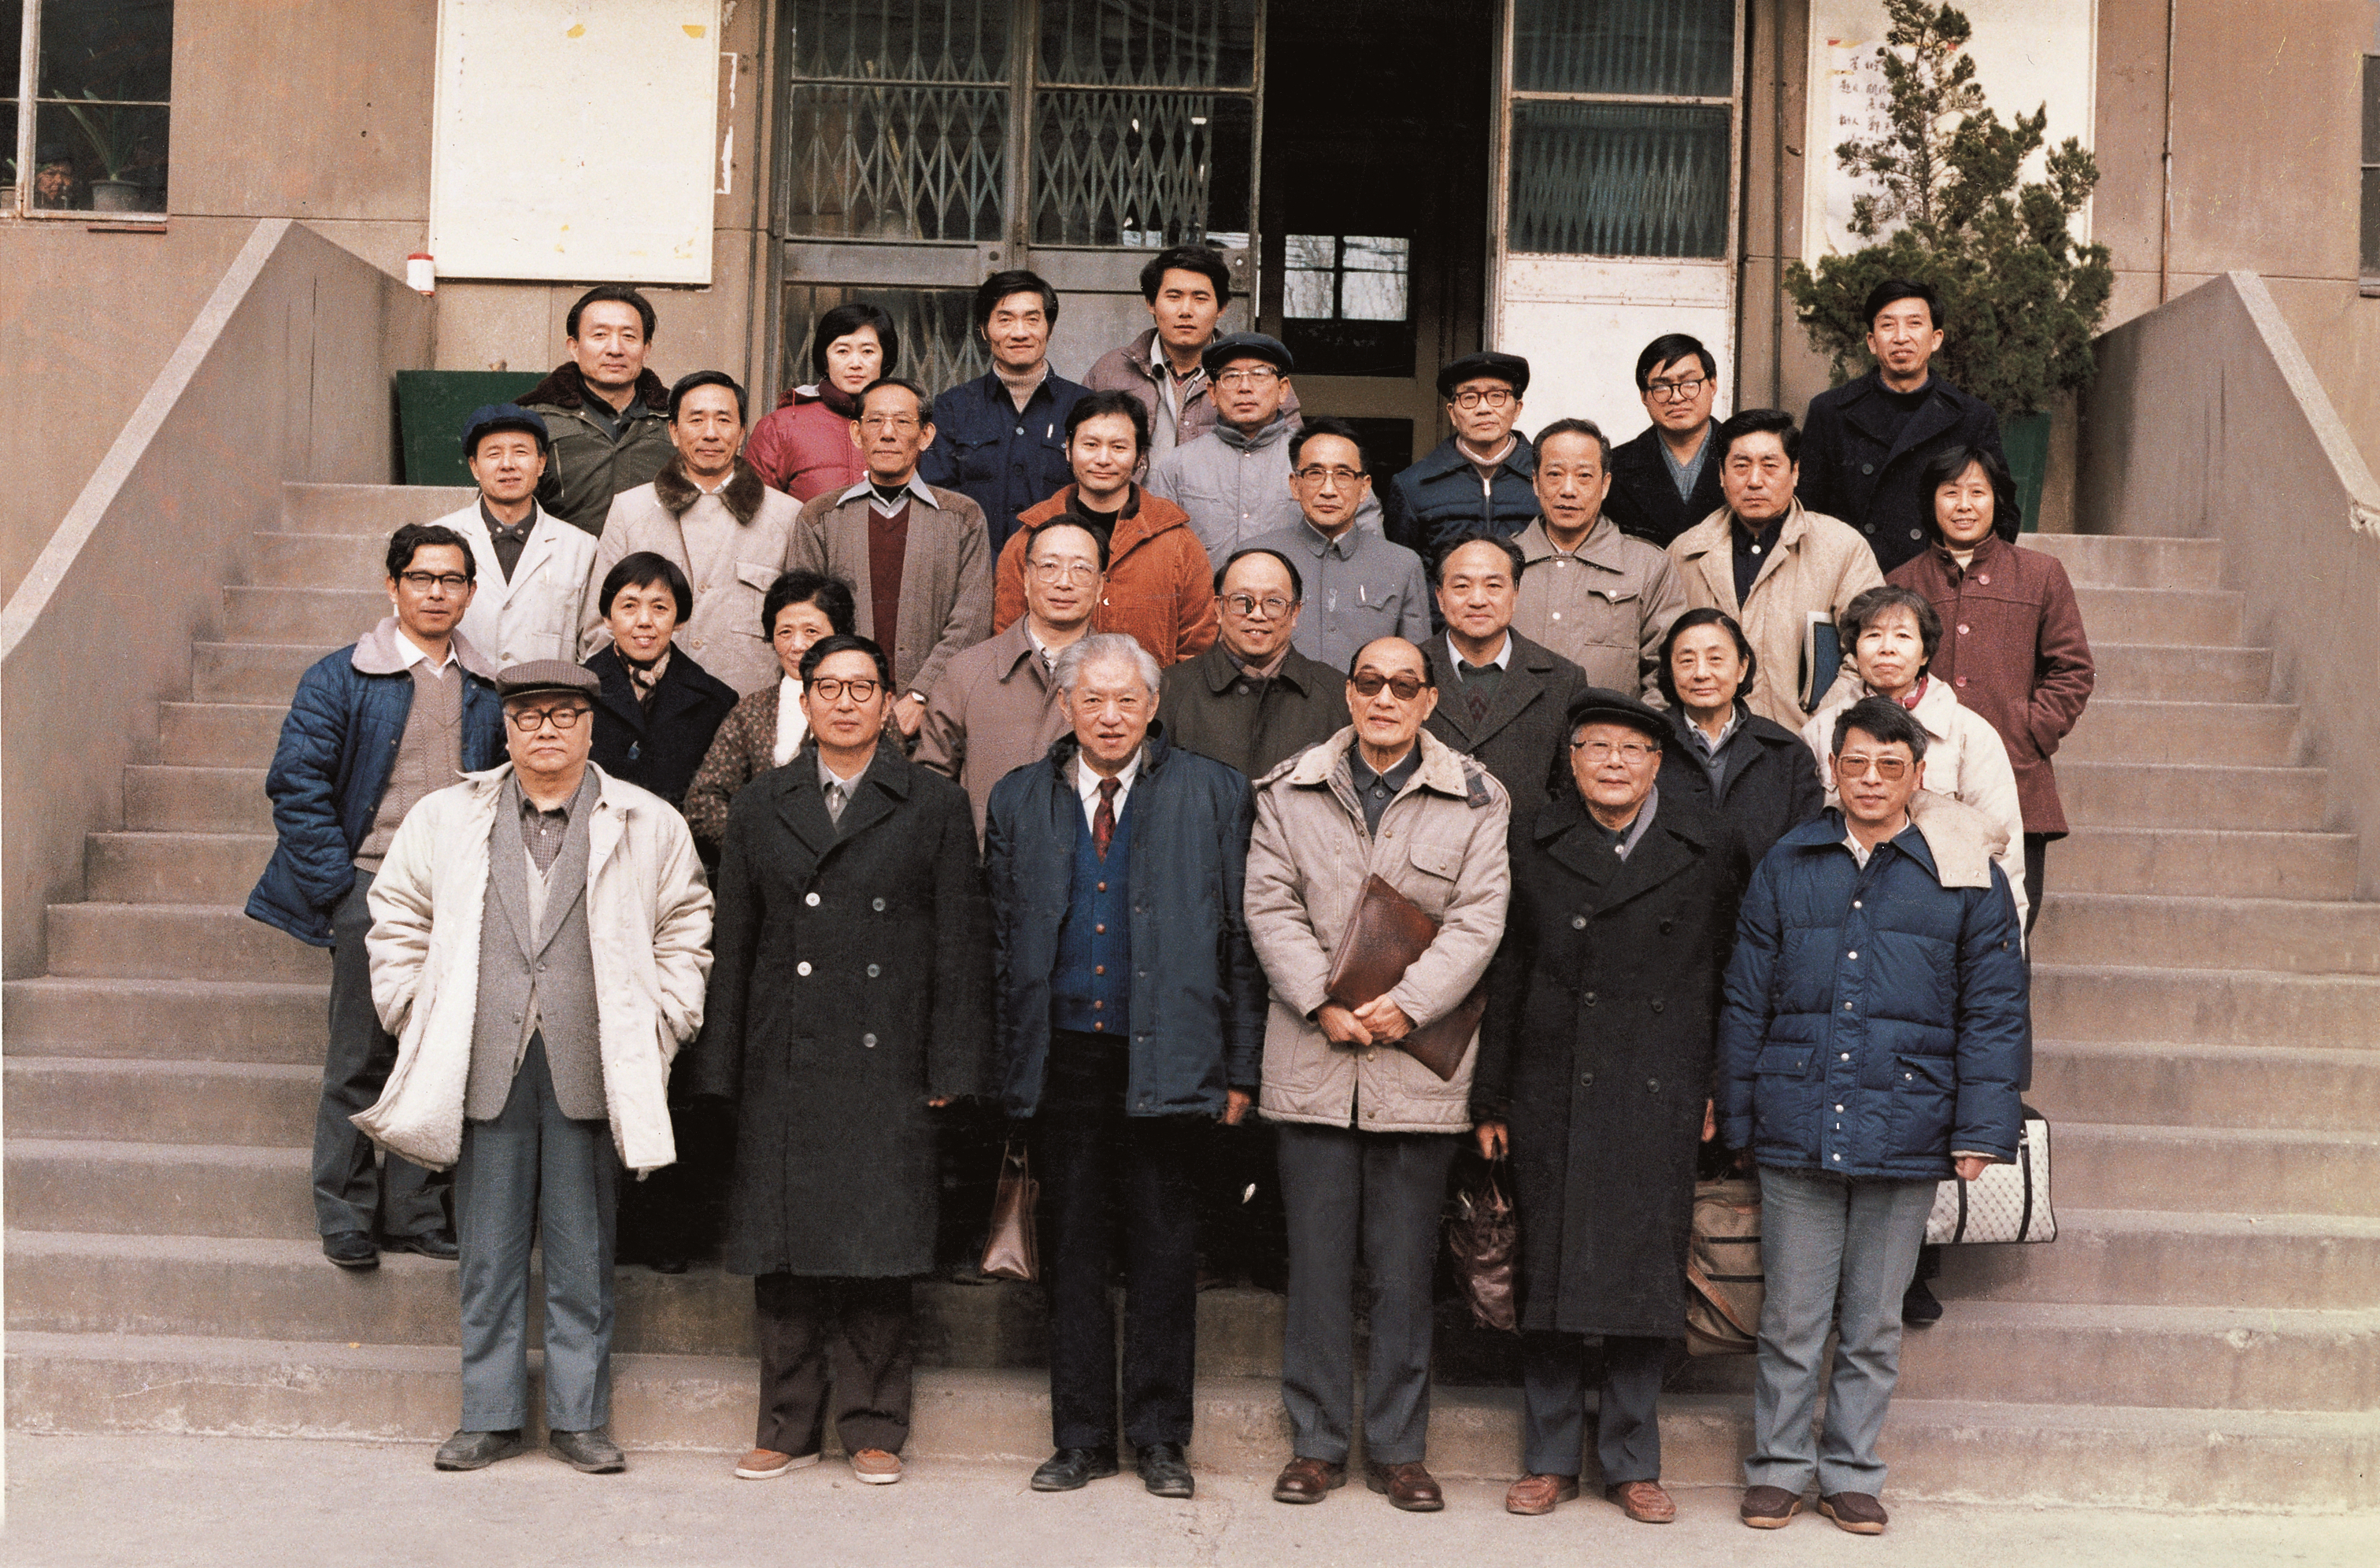 1989年生物大分子国家重点实验室首届年会  2排左4为杨福愉